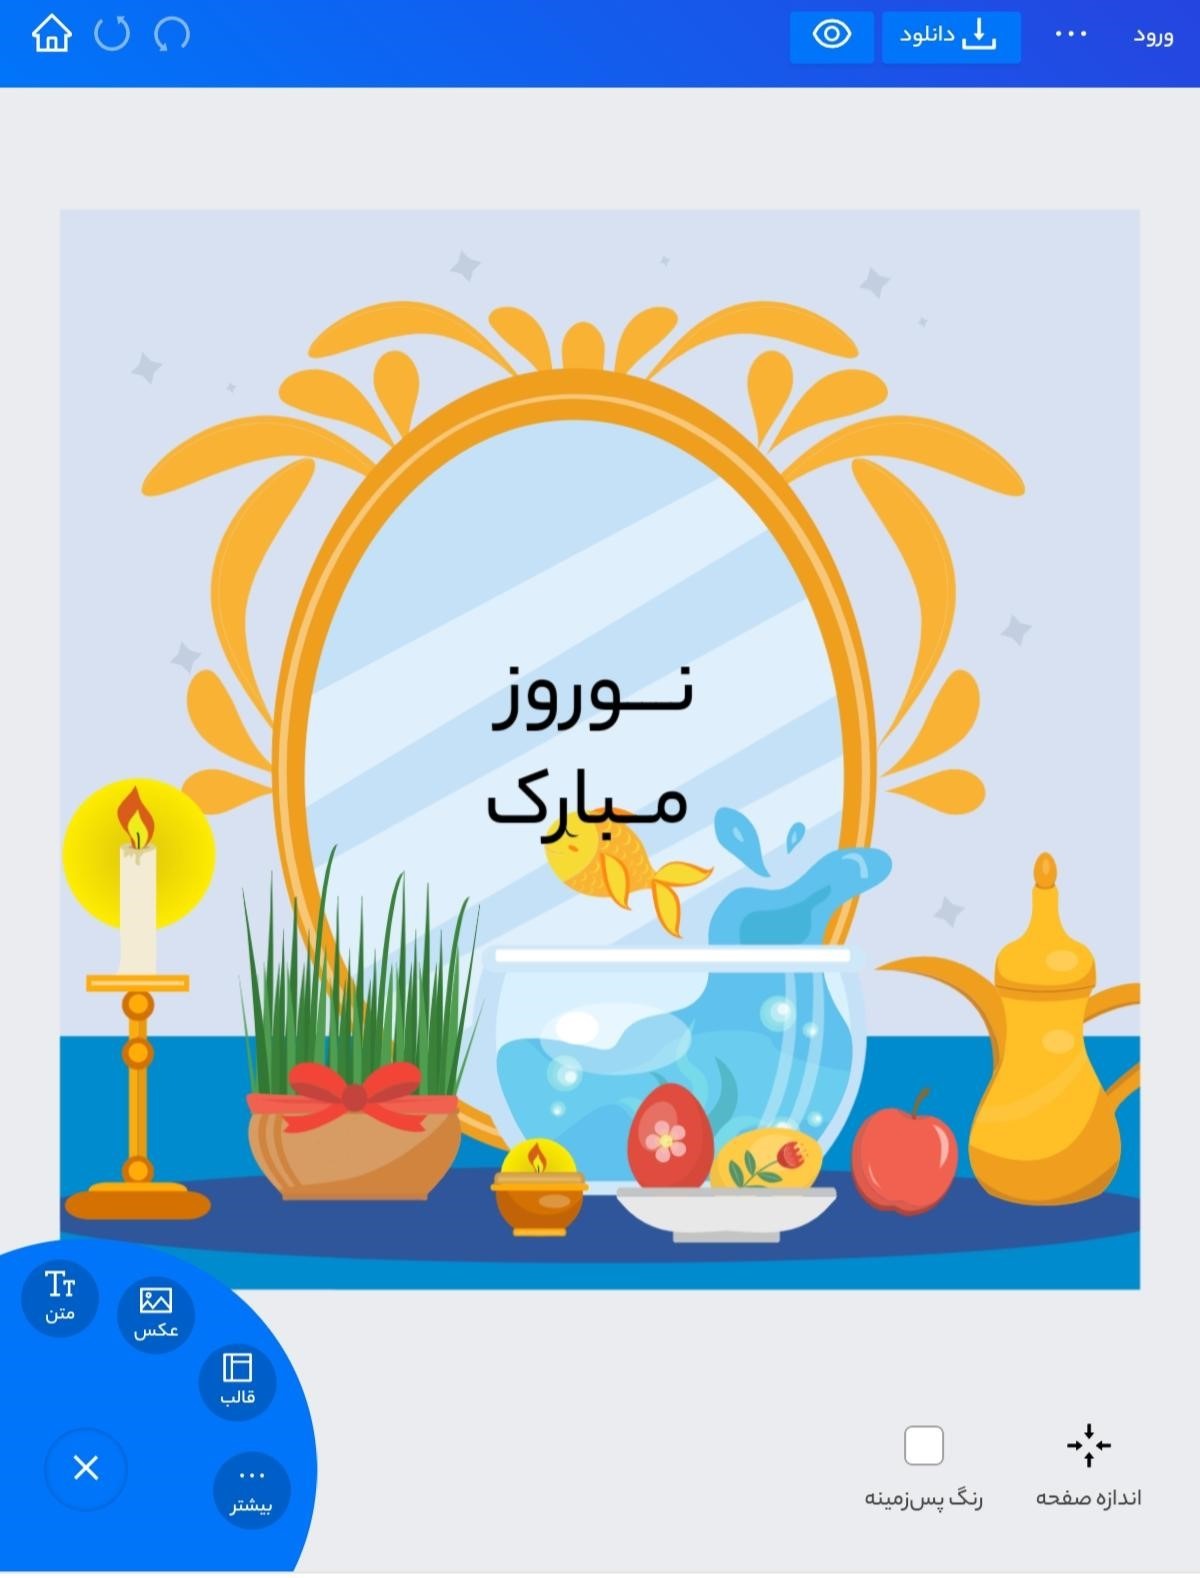 طراحی پست اینستا برای تبریک عید نوروز